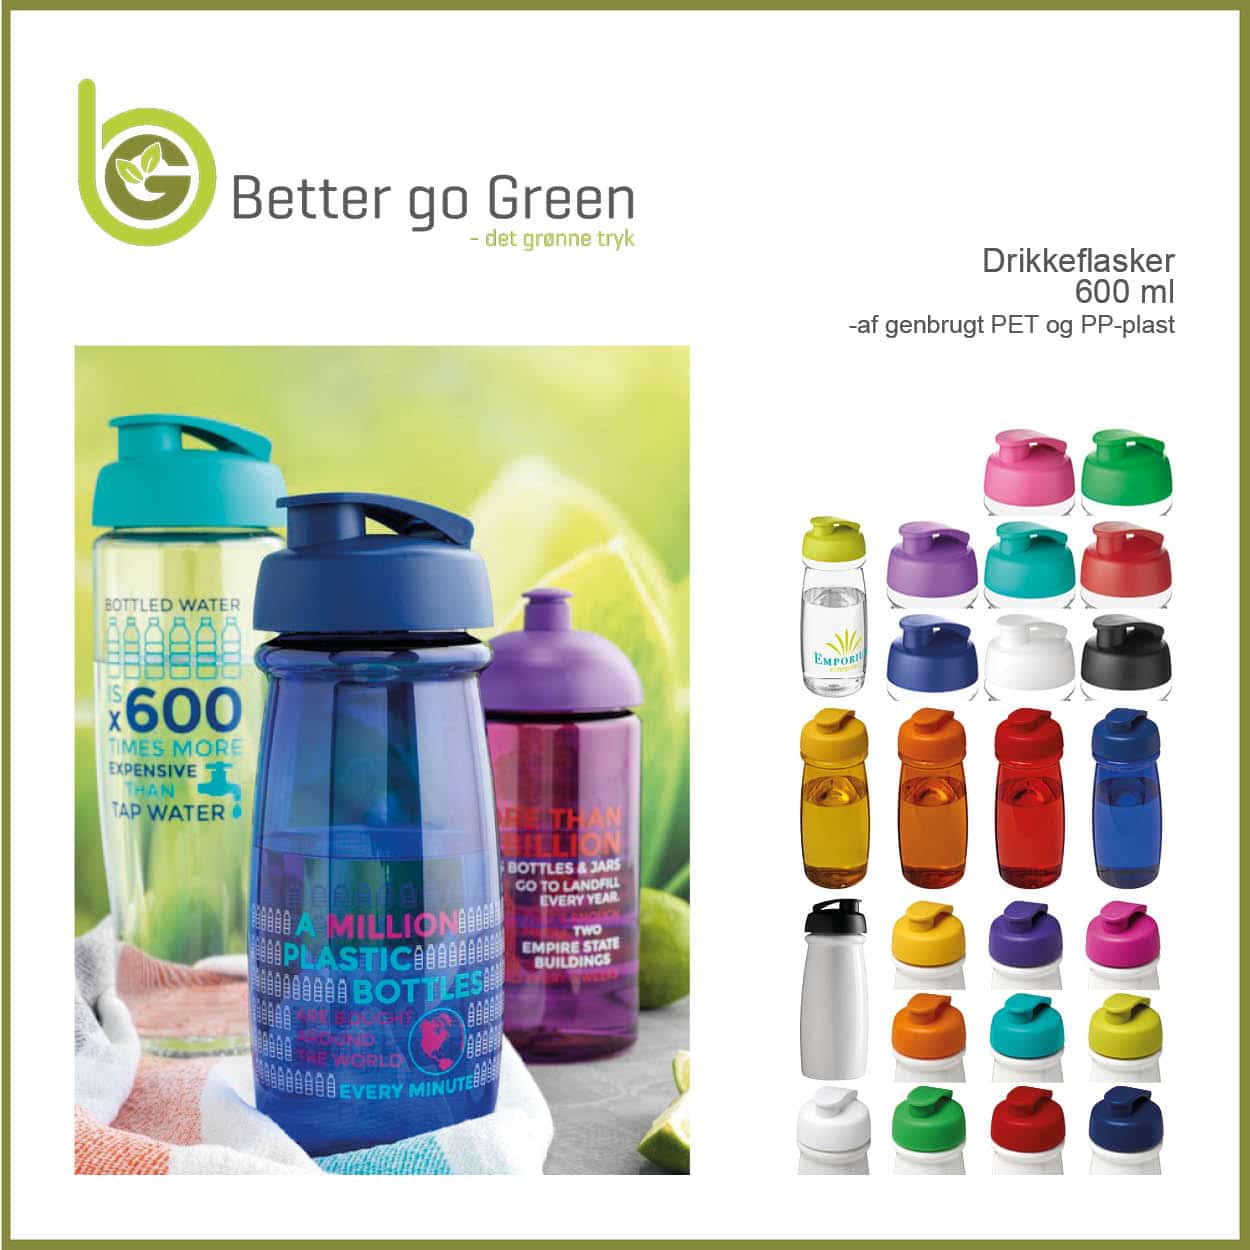 Drikkeflasker af genbrugt PET og PP-plast. BetterGoGreen.dk